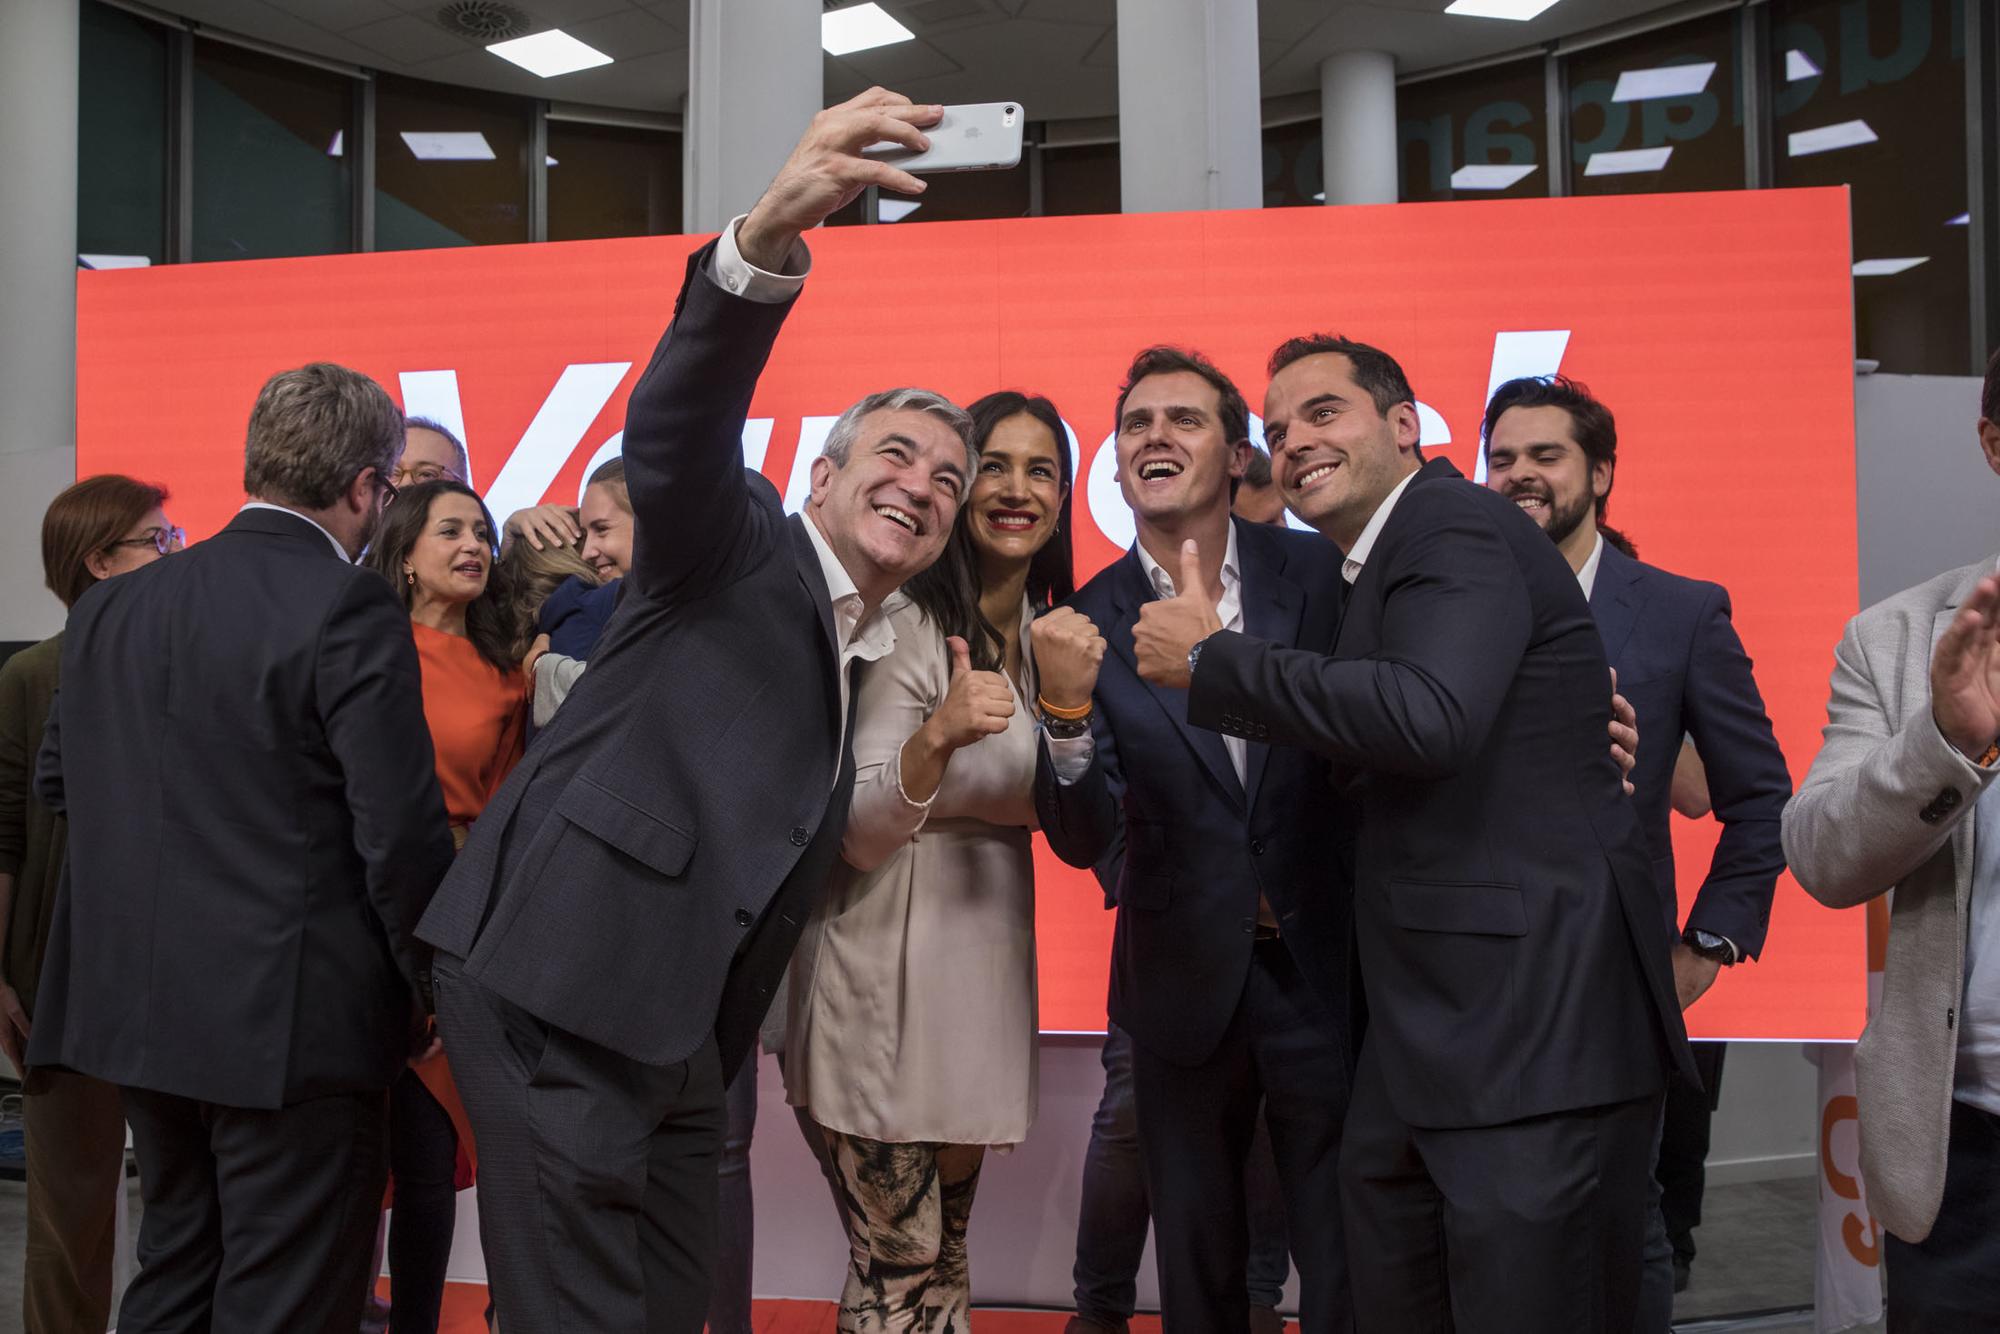 Noche electoral Ciudadanos 26M selfie